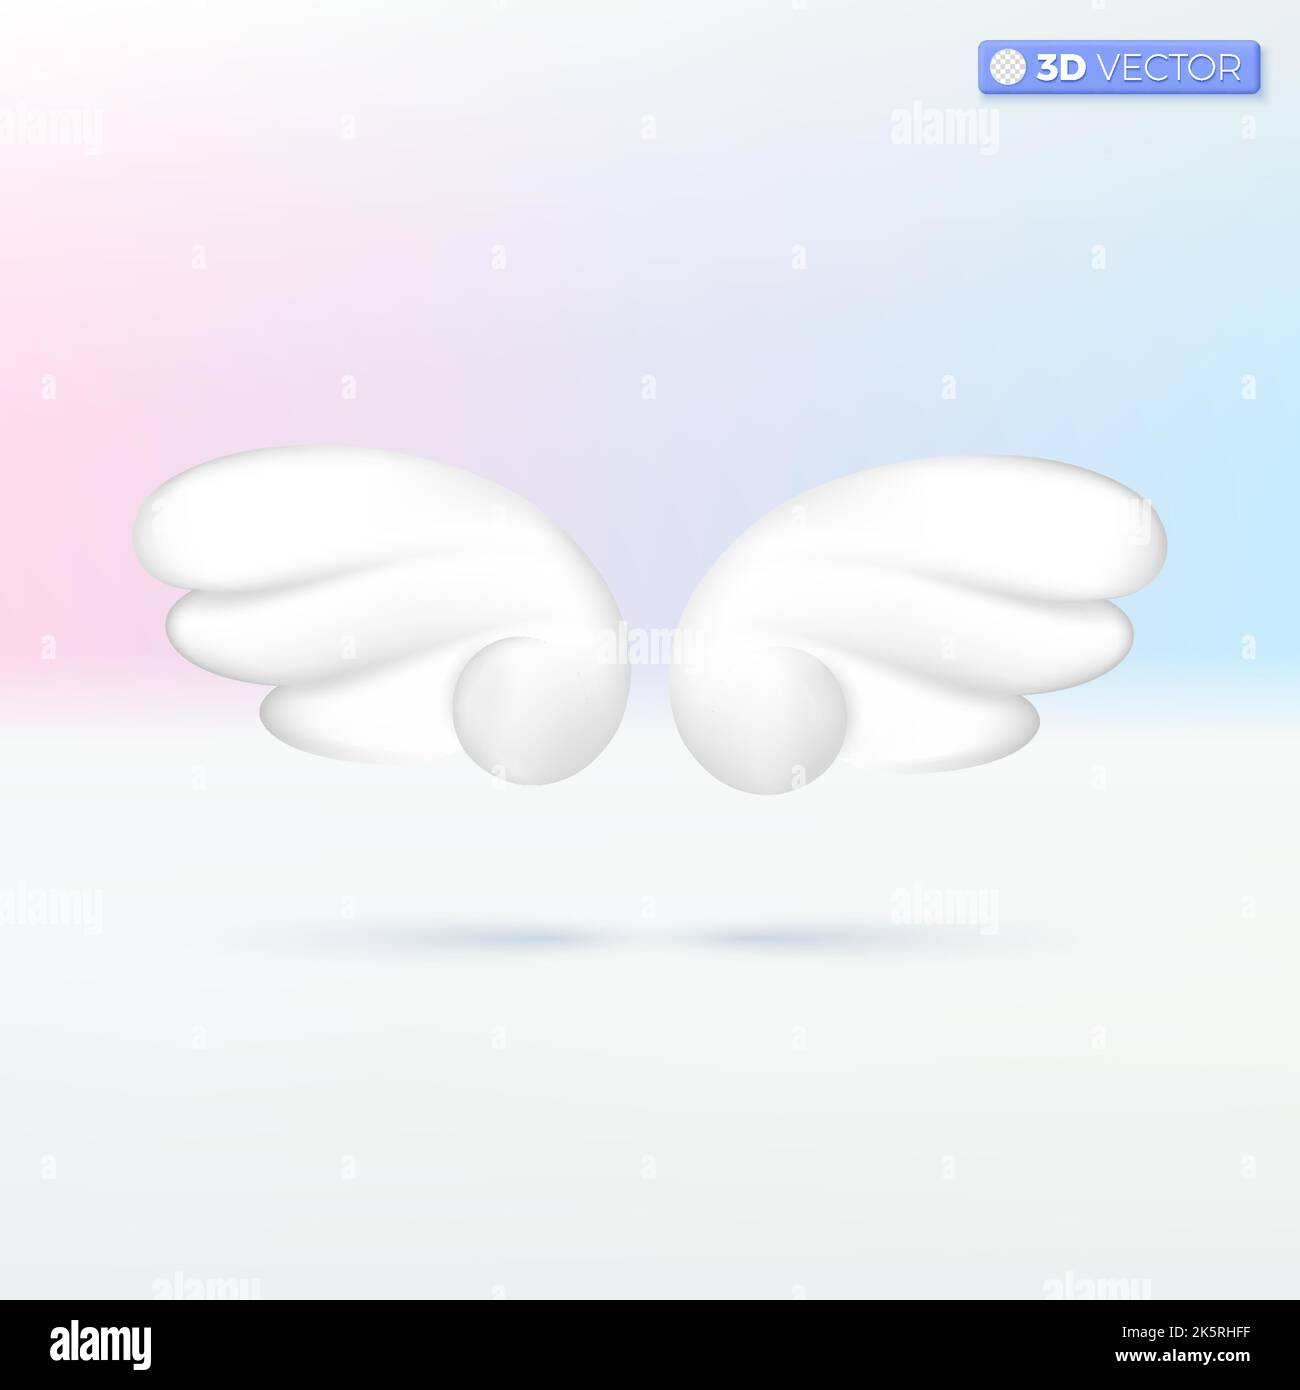 Blanc deux symboles d'icône d'ailes d'ange. Conte de fées, mythique, plume, mouche, cupid, concept de liberté. 3D illustrations vectorielles isolées. Dessin animé pastel Illustration de Vecteur